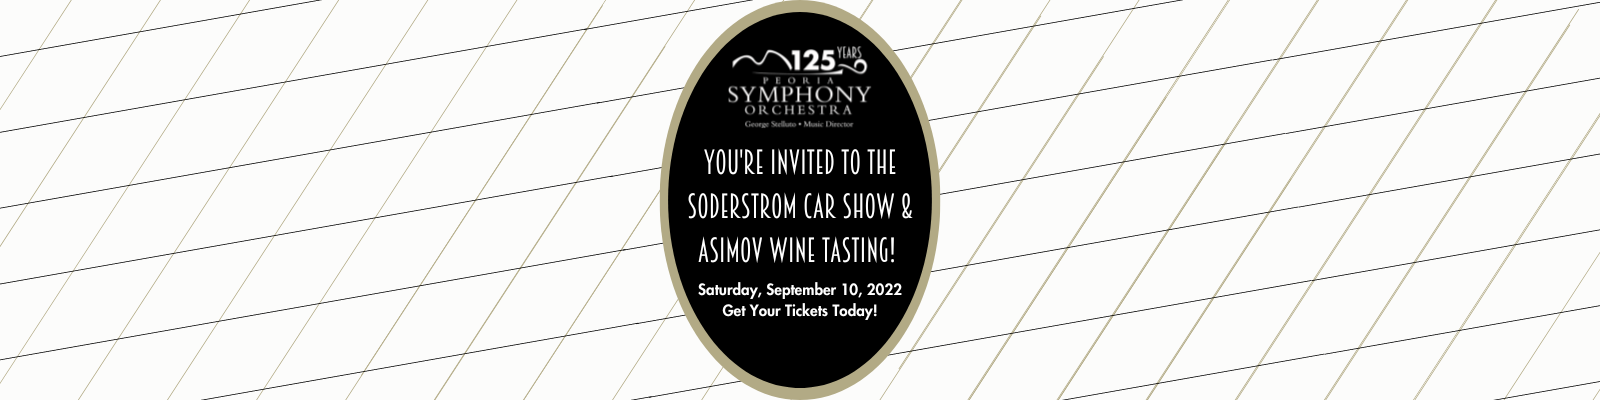 Soderstrom Car Show & Asimov Wine Tasting